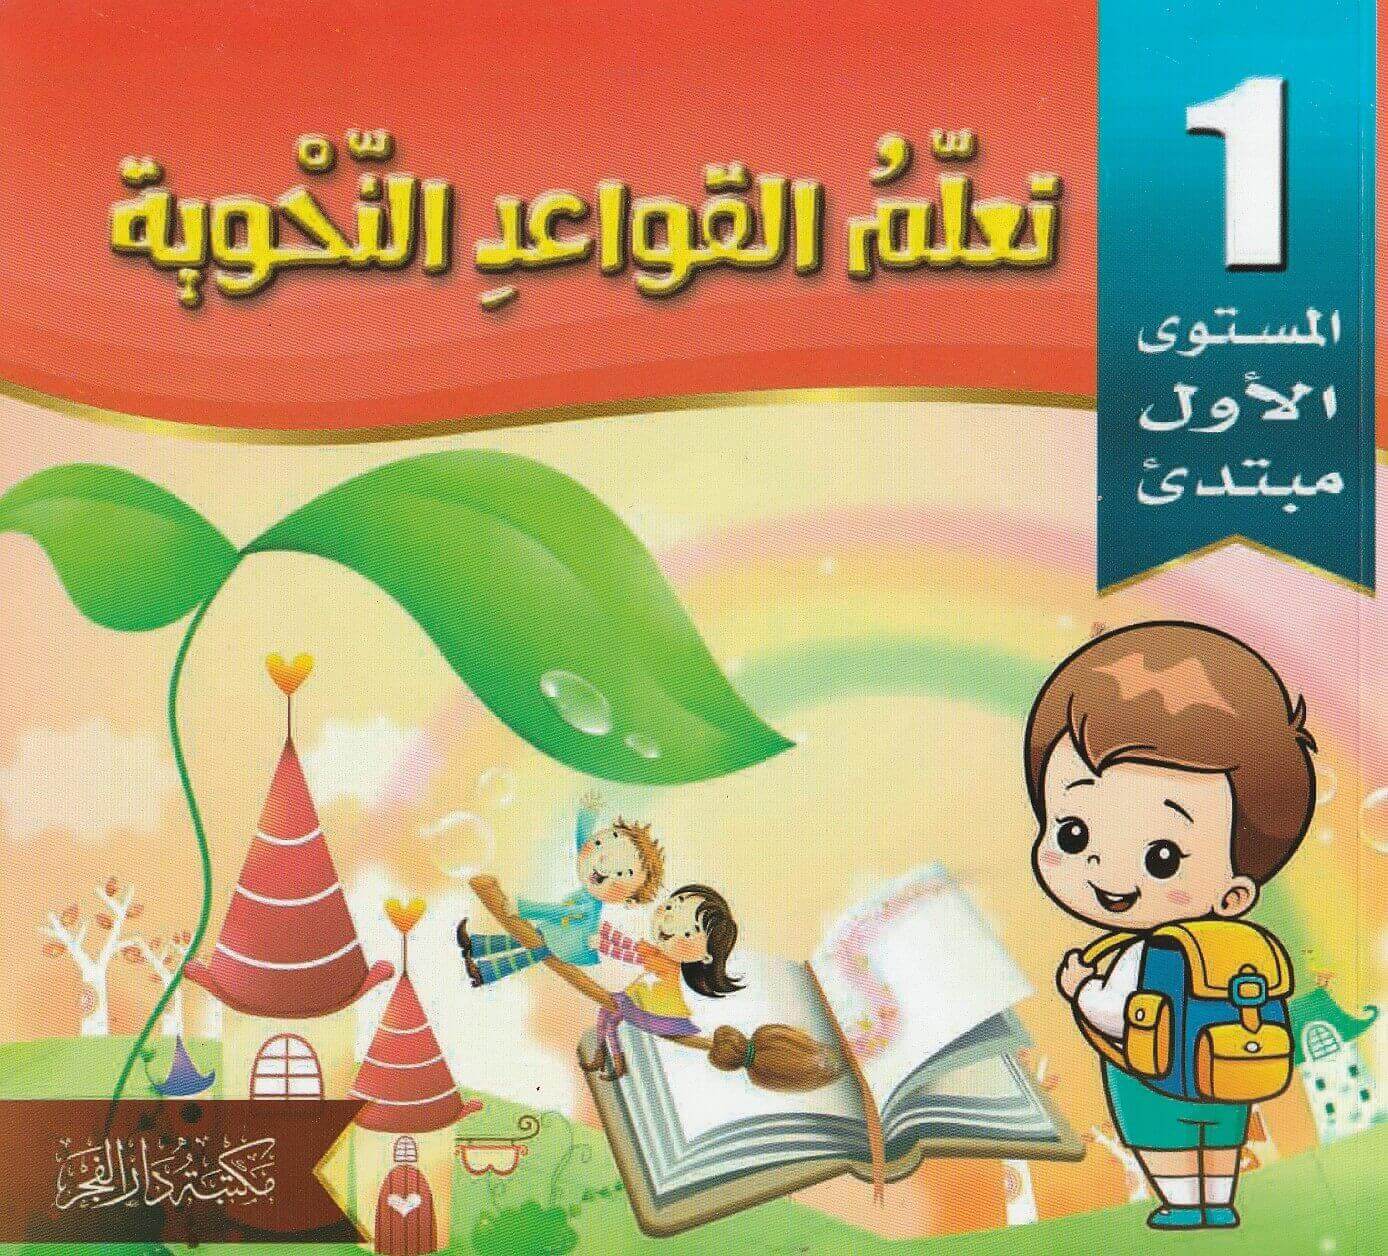 سلسلة تعلم القواعد النحوية للأطفال كتب أطفال اللجنة العلمية لمكتبة دار الفجر